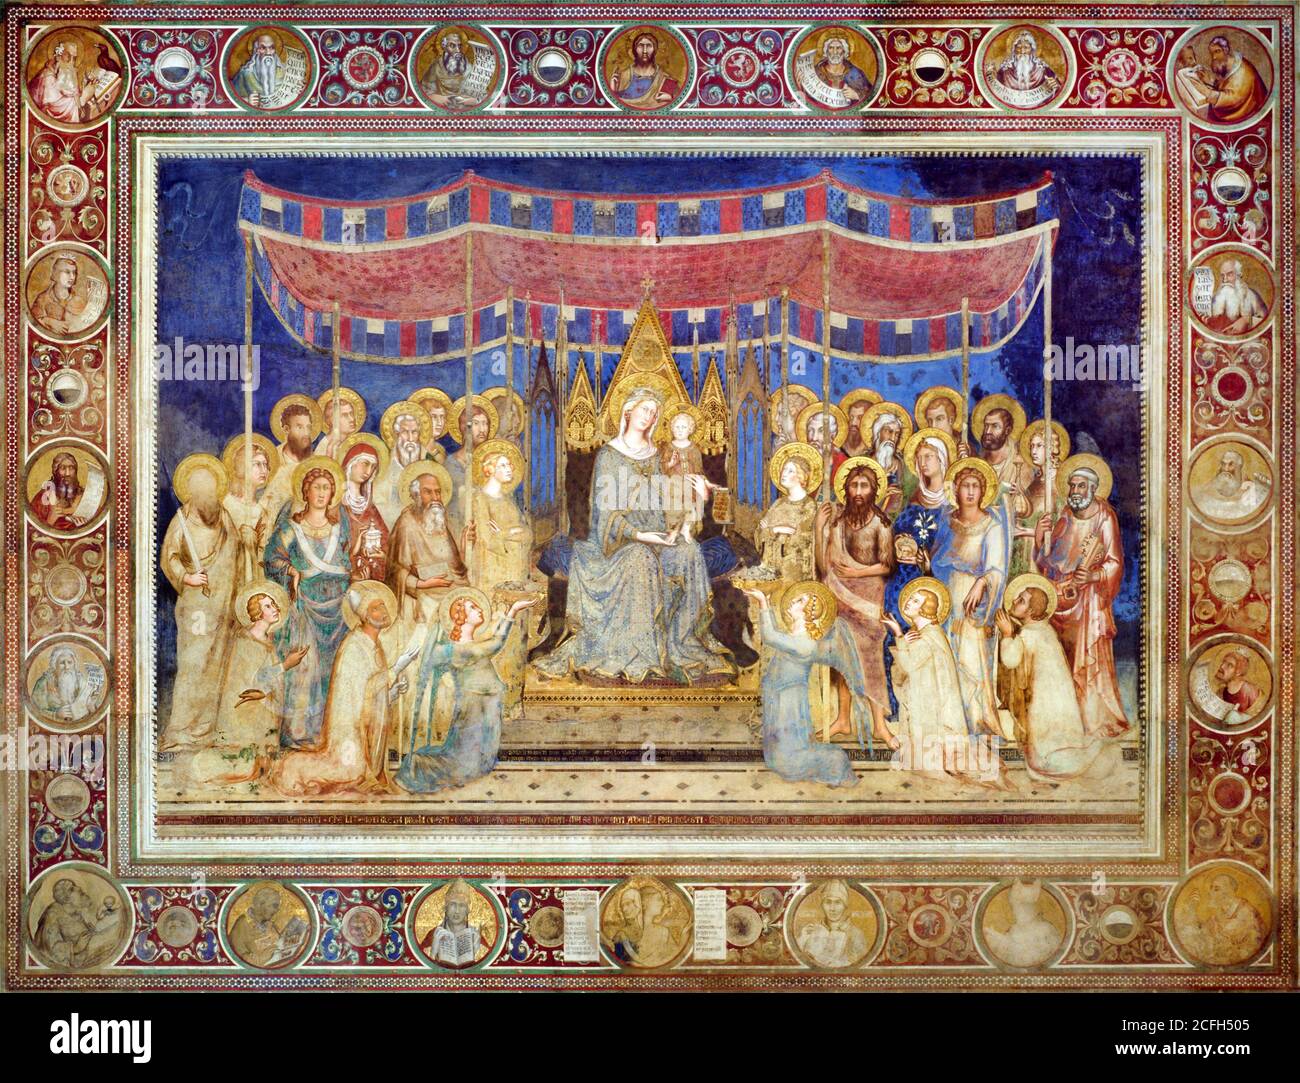 Simone Martini, Maesta, Circa 1315 - 1321, fresco, Fondazione Musei Senesi, Siena, Italia Foto de stock